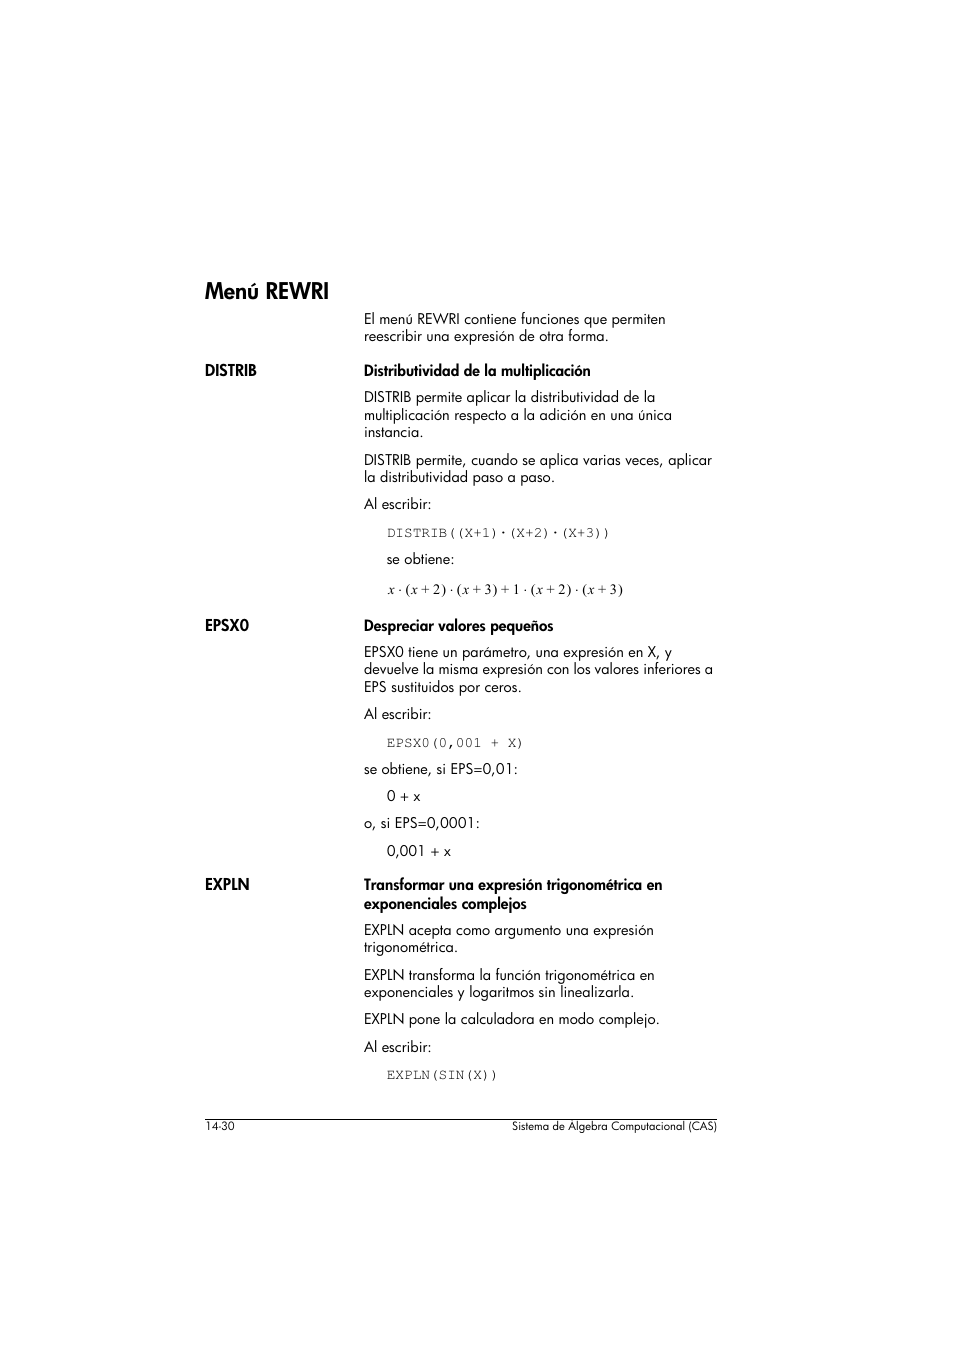 Menú rewri | HP Calculadora gráfica HP 40gs Manual del usuario | Página 222 / 465